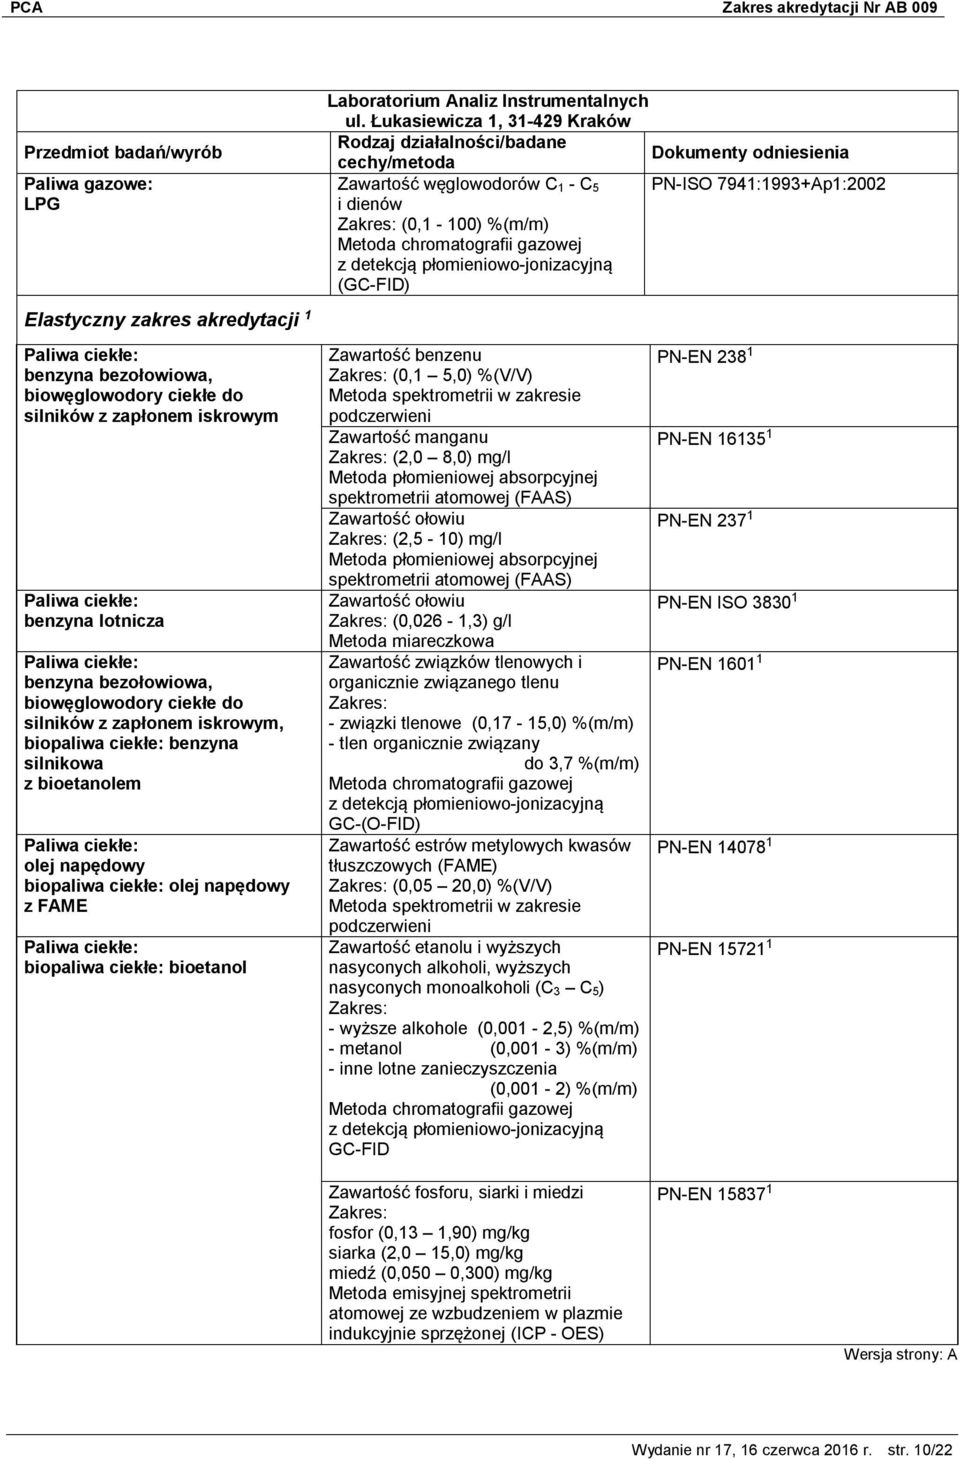 Łukasiewicza 1, 31-429 Kraków Zawartość węglowodorów C 1 - C 5 PN-ISO 7941:1993+Ap1:2002 i dienów (0,1-100) %(m/m) Metoda chromatografii gazowej z detekcją płomieniowo-jonizacyjną (GC-FID) Zawartość